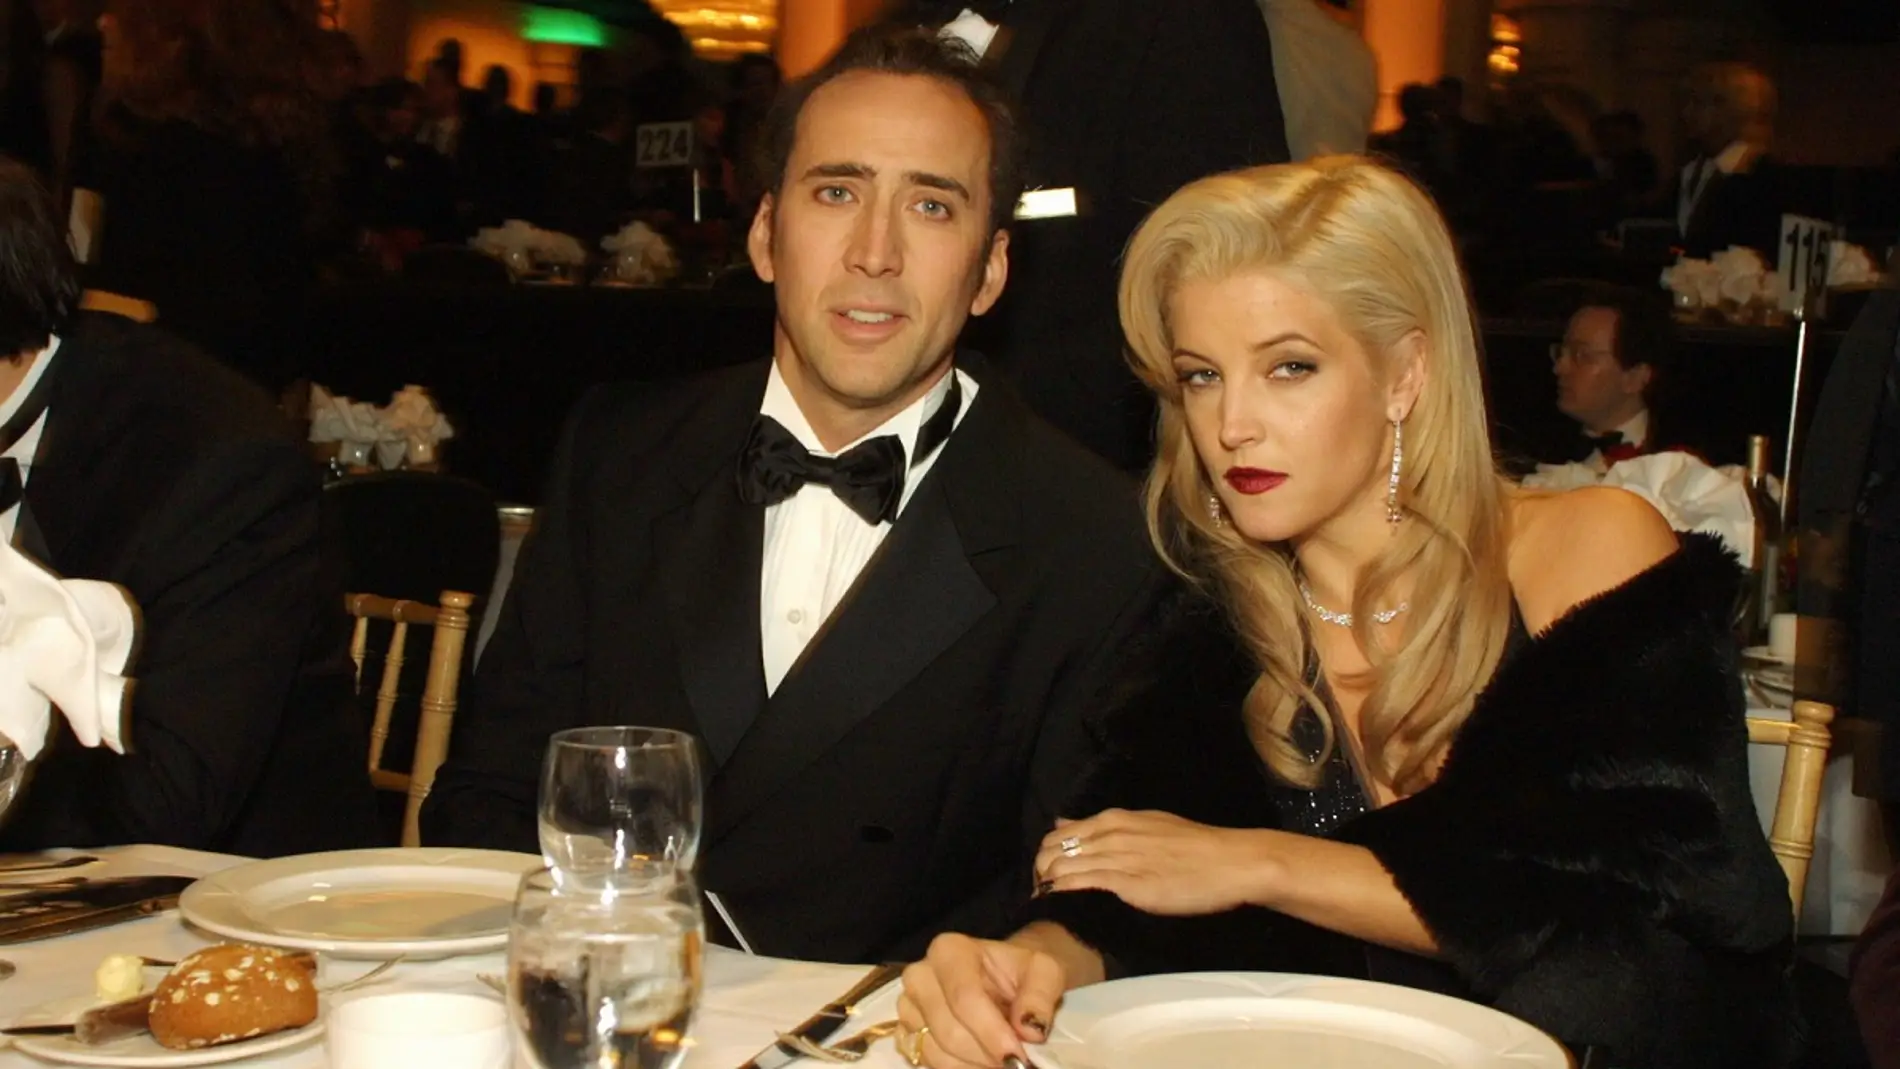 Nicolas Cage y Lisa Marie Presley 